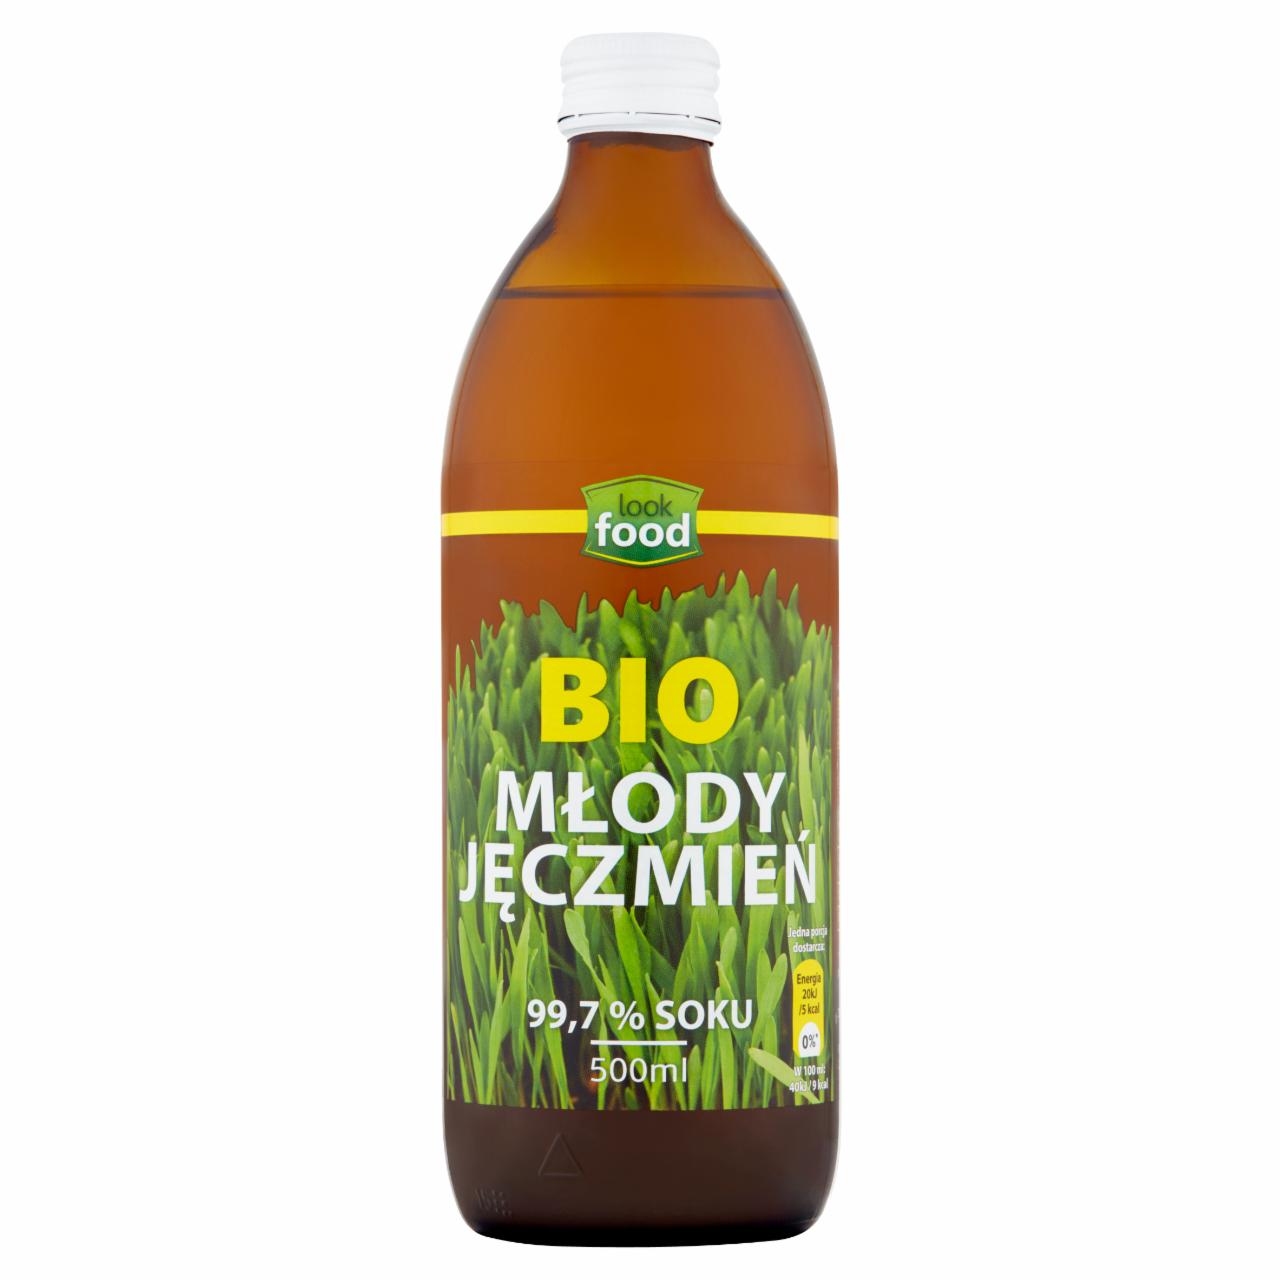 Zdjęcia - Look Food Bio sok młody jęczmień 500 ml